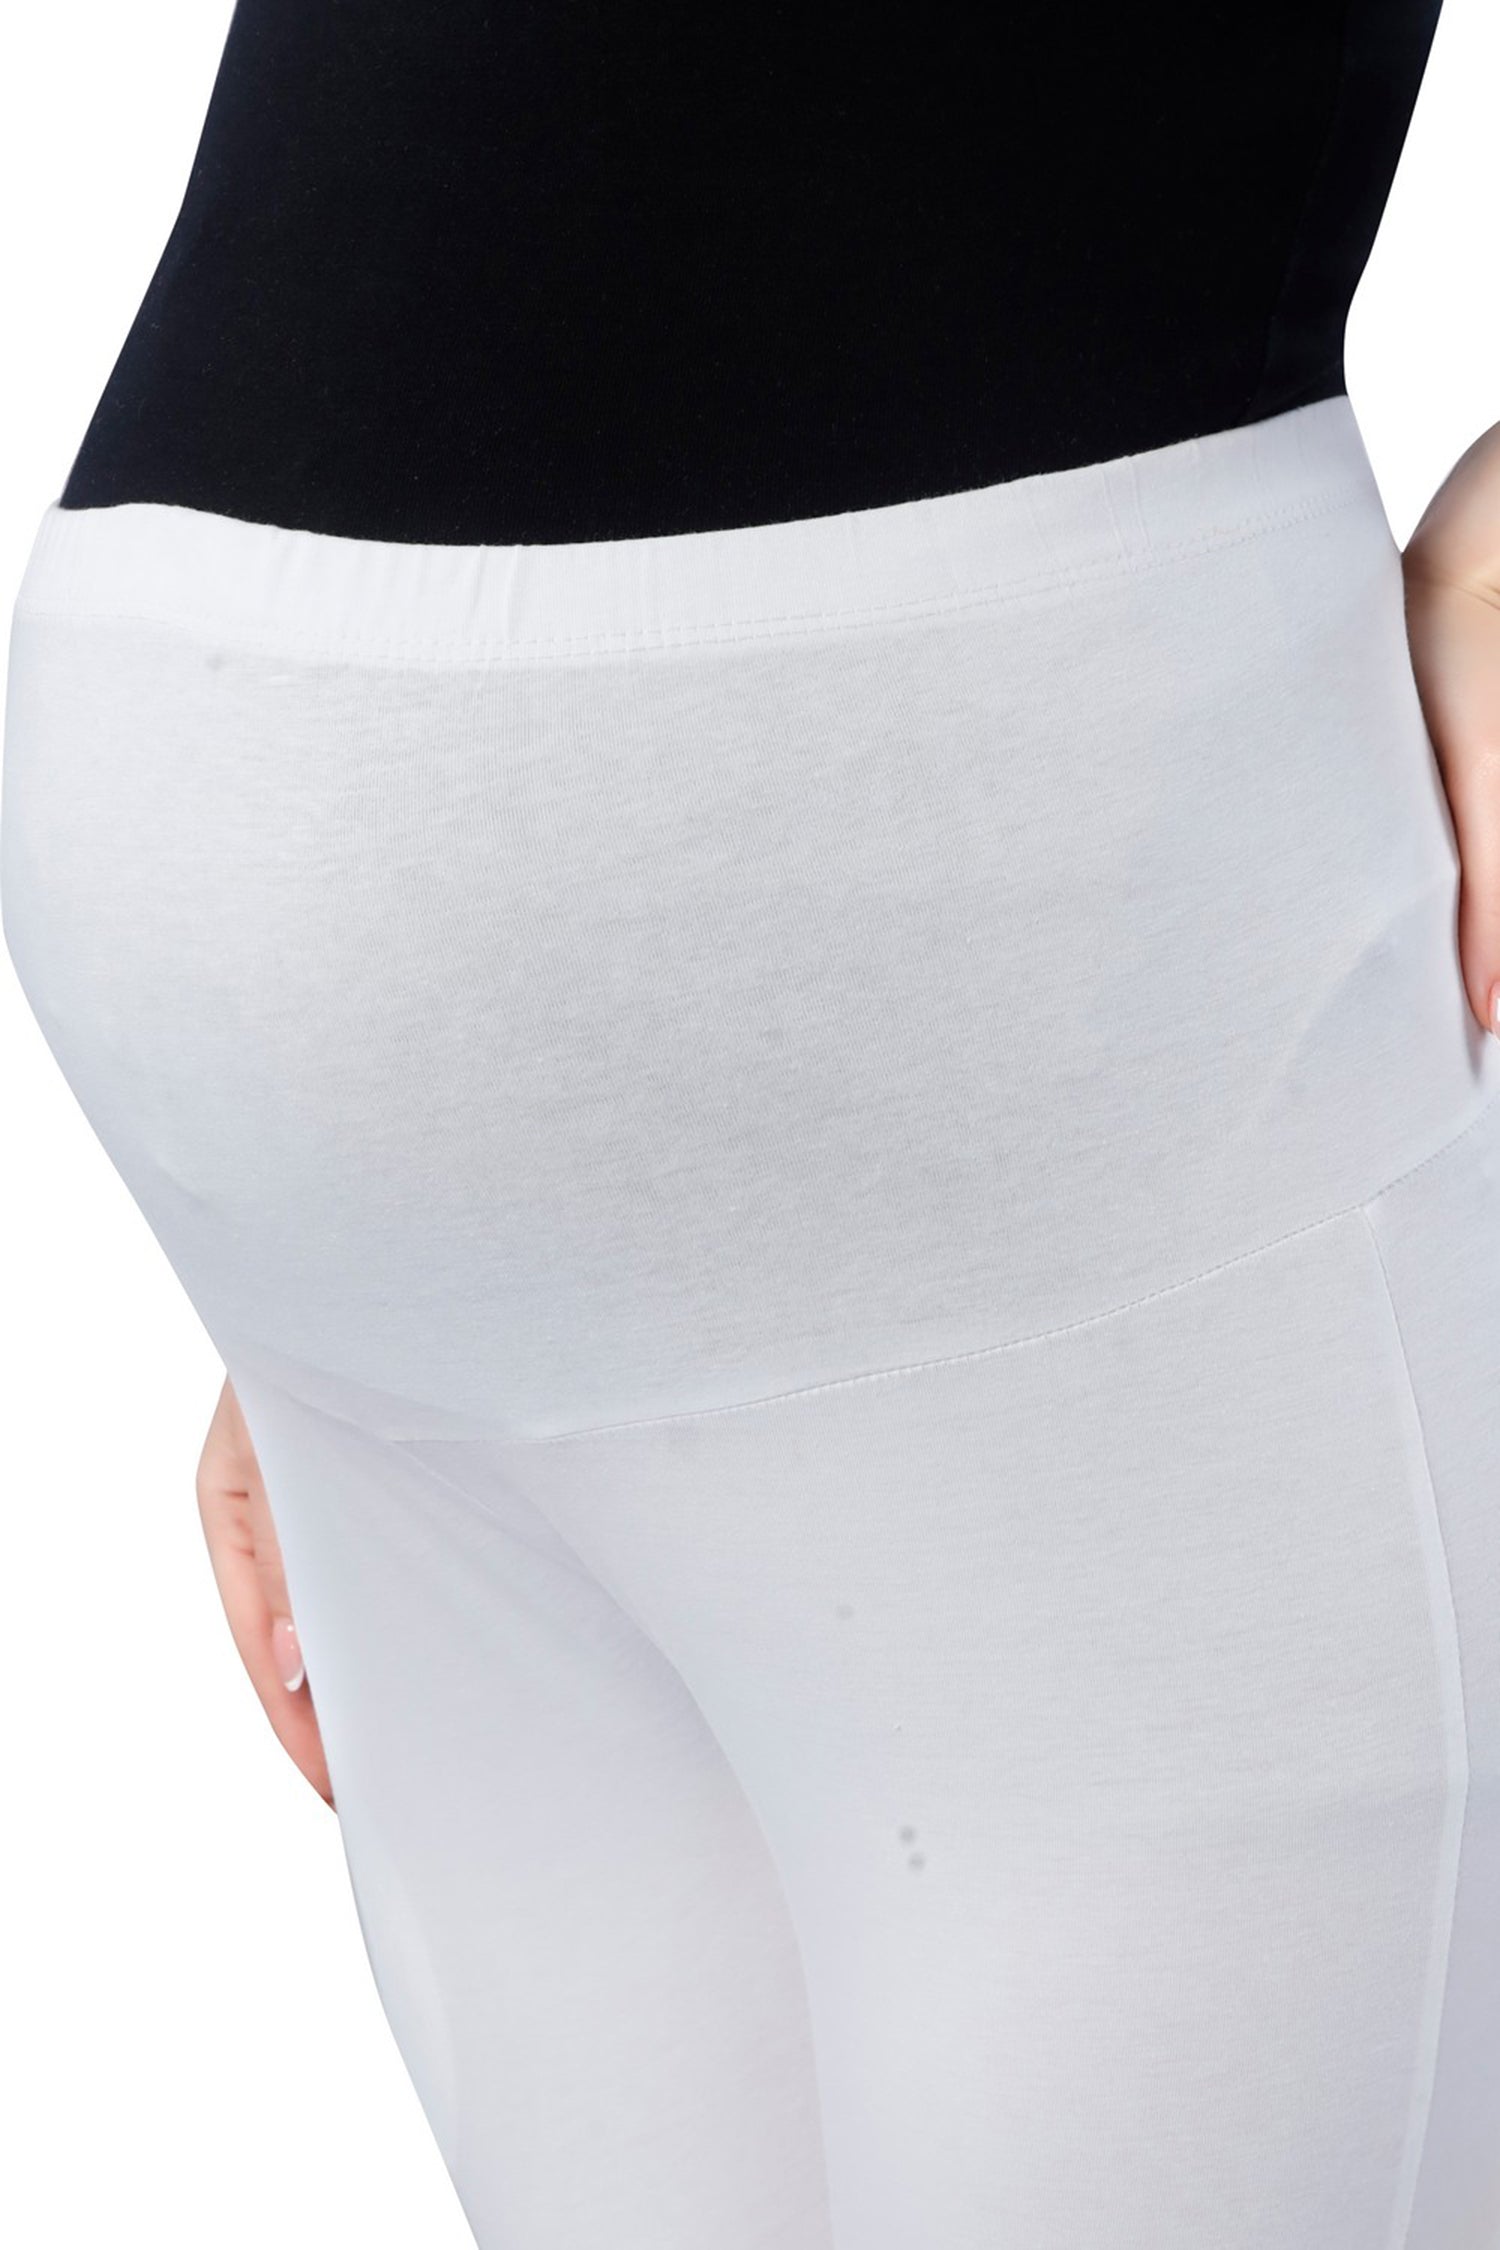 TRASA Women's Cotton Maternity Leggings - Size :- L, XL, 2XL,3XL